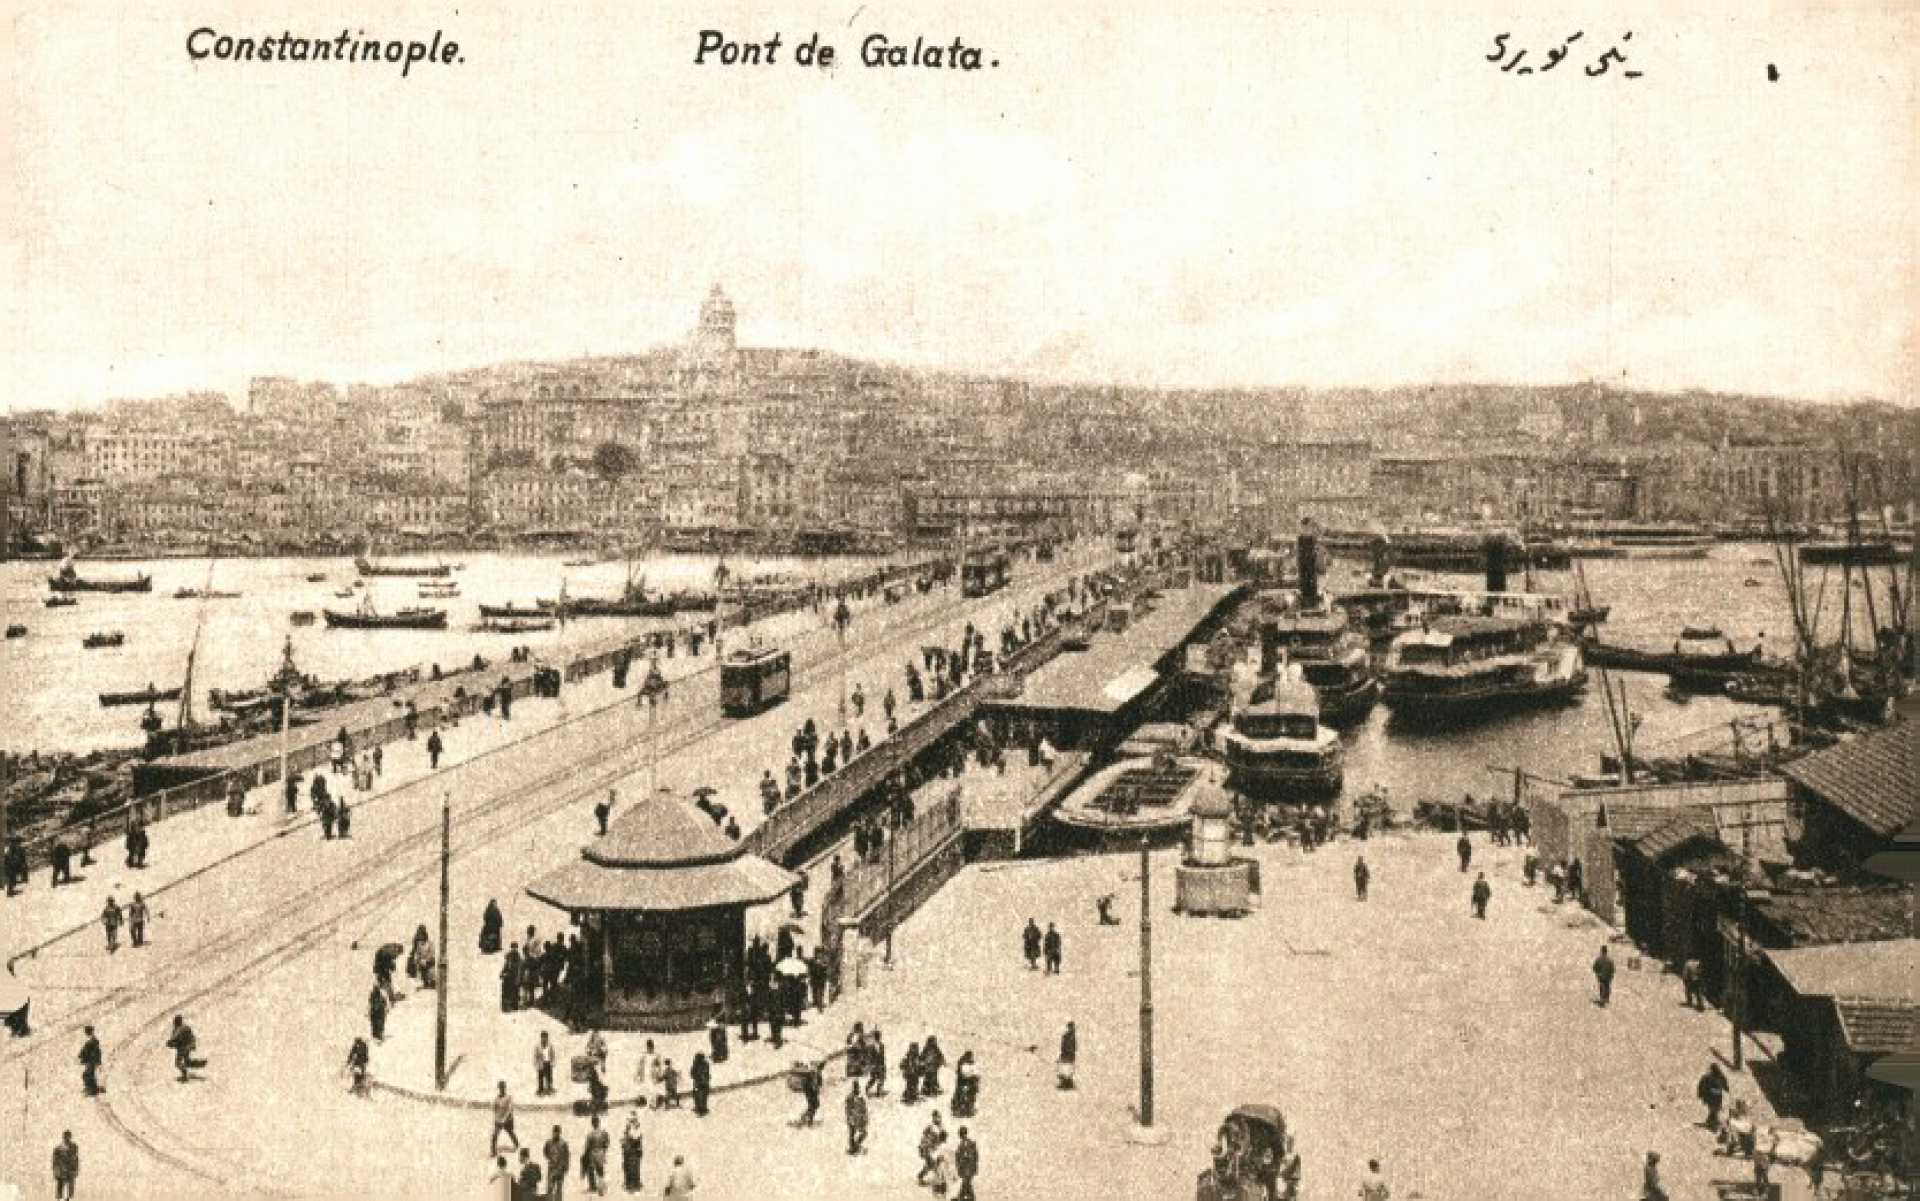 Pont de Galata